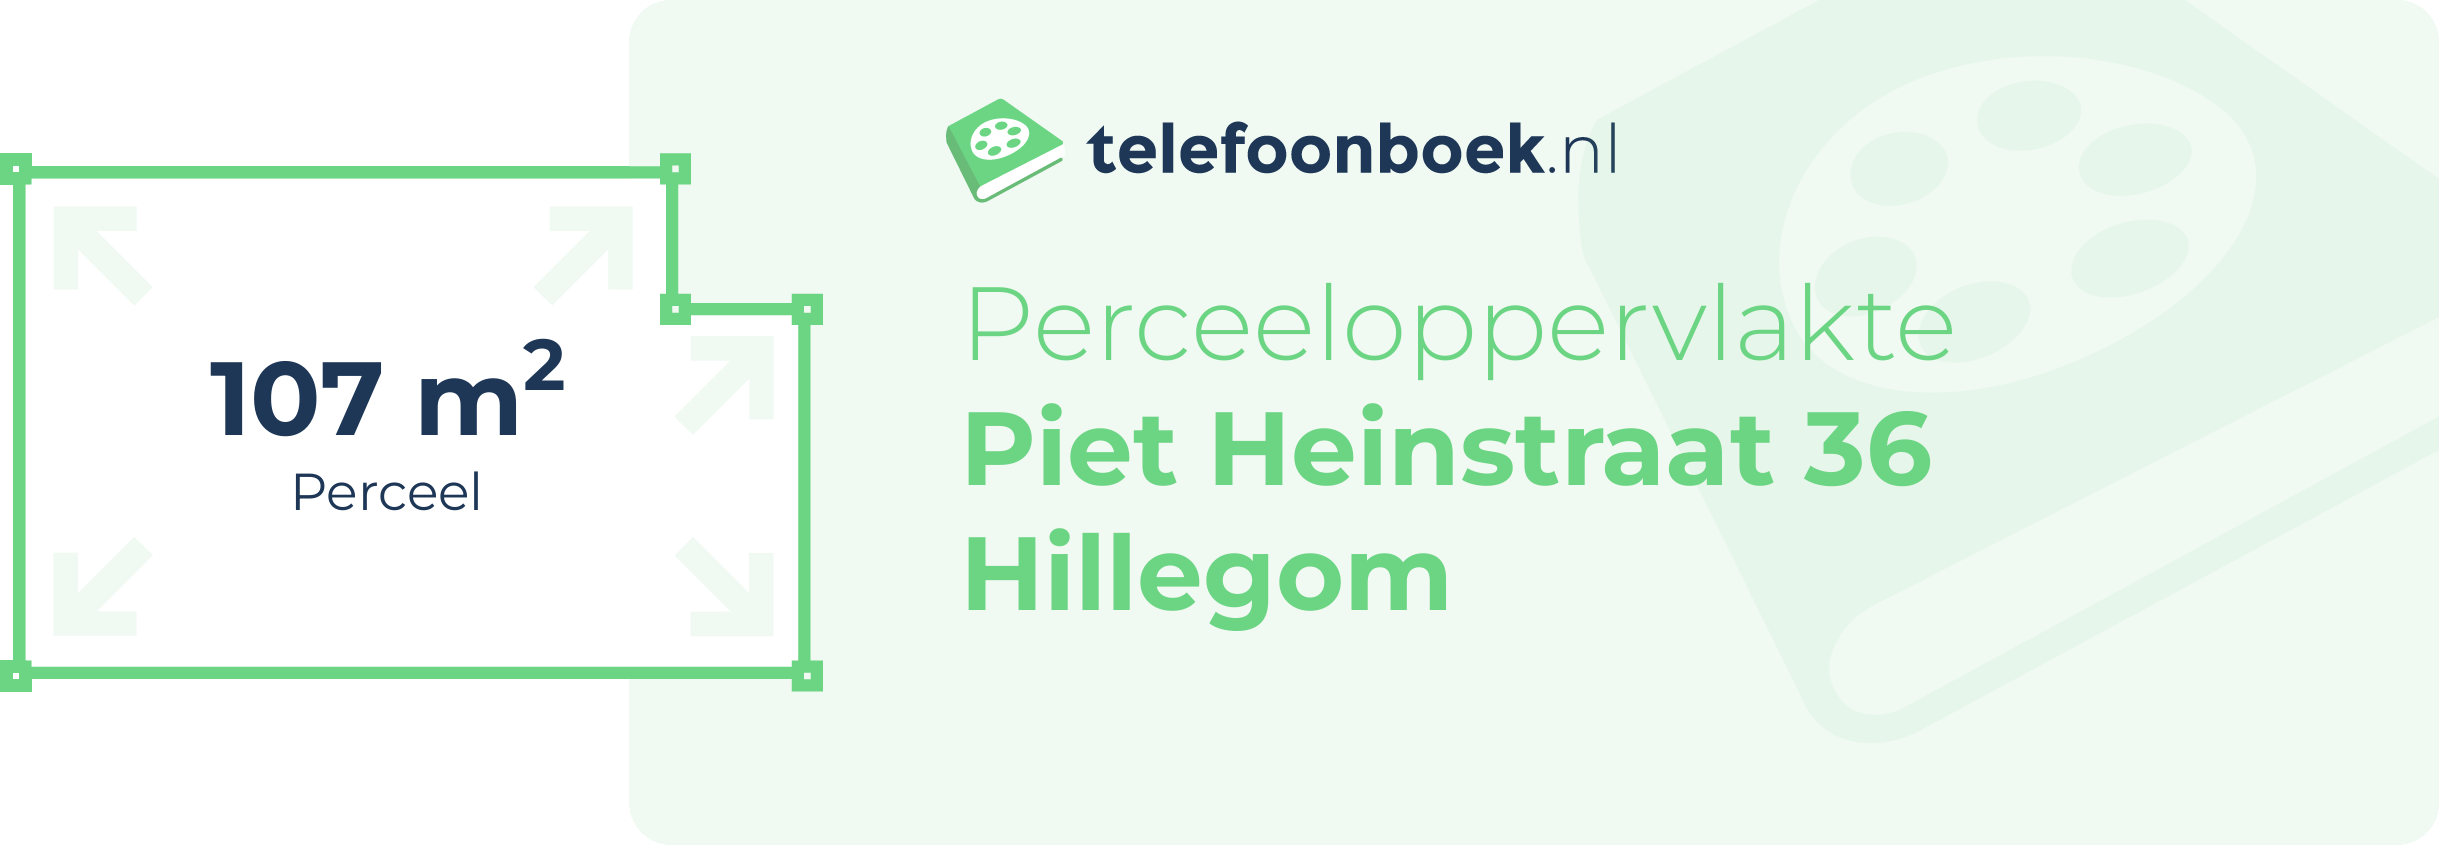 Perceeloppervlakte Piet Heinstraat 36 Hillegom